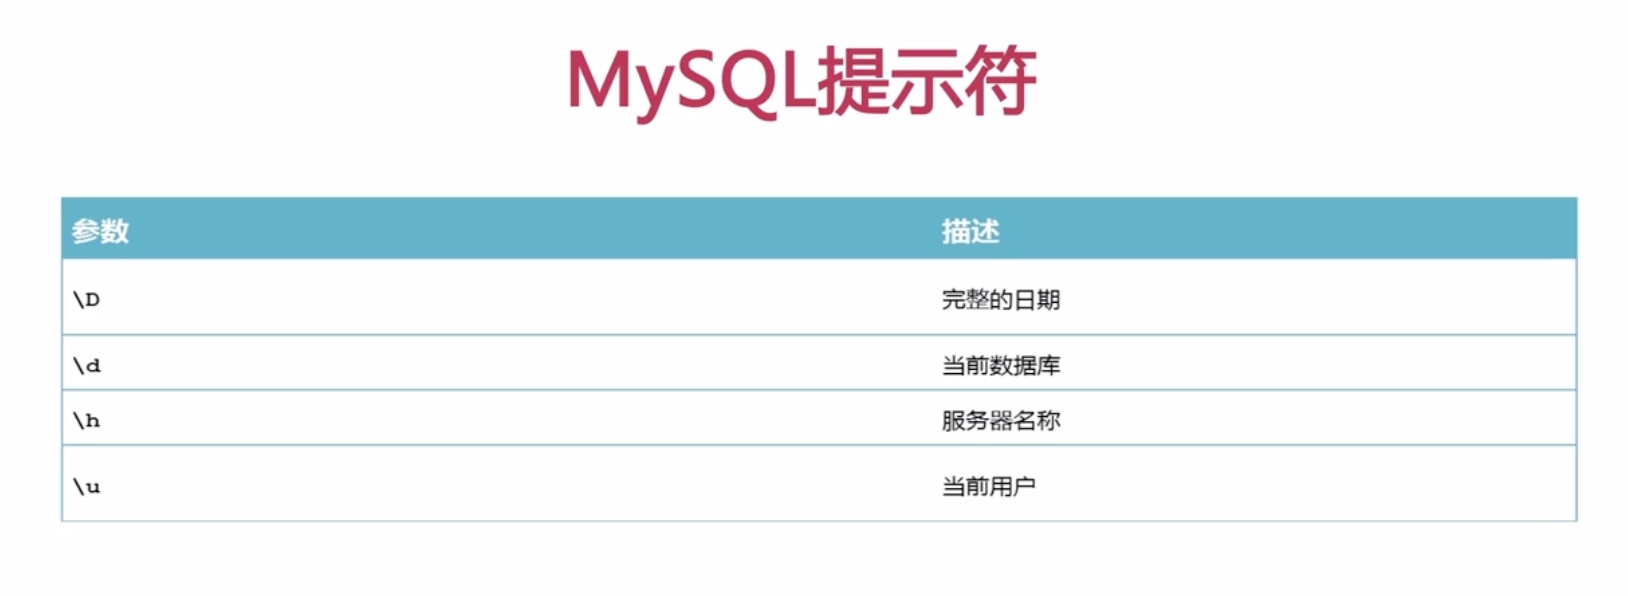 MySQL prompt